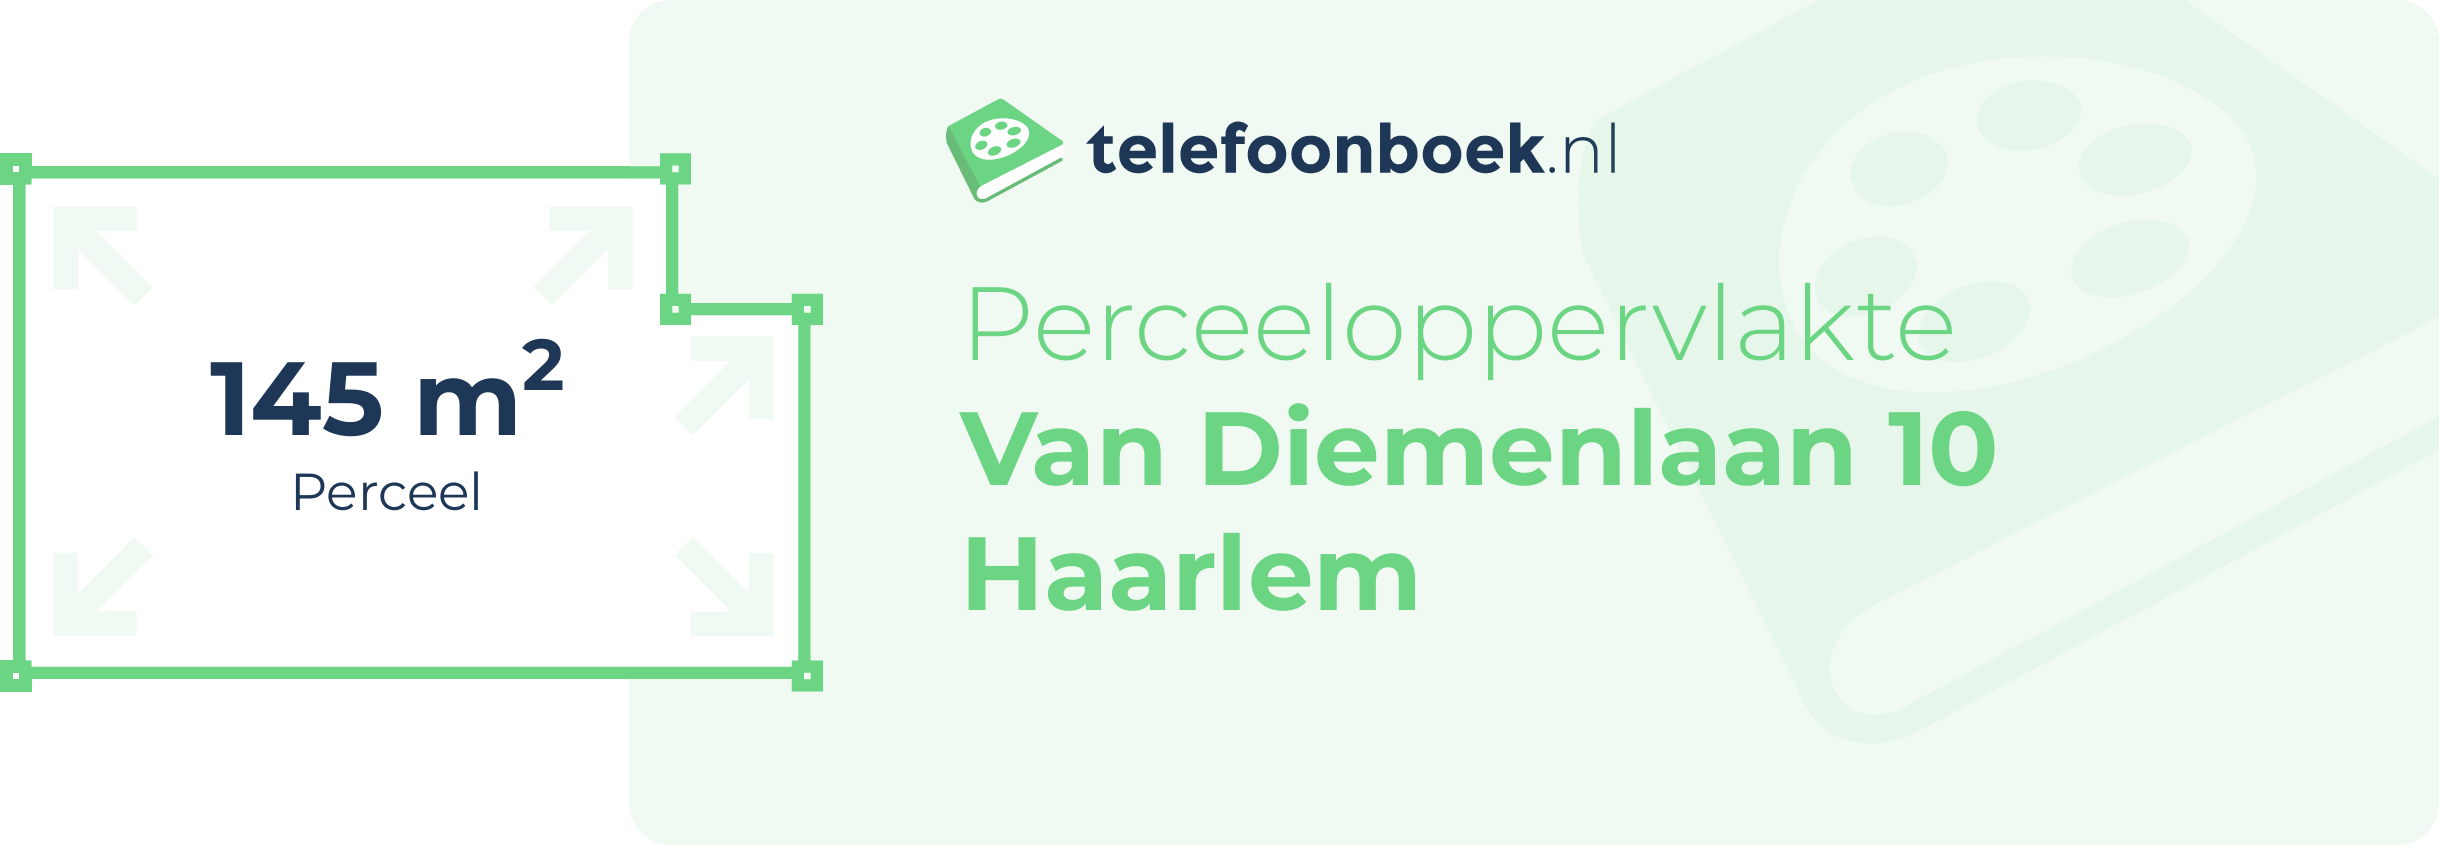 Perceeloppervlakte Van Diemenlaan 10 Haarlem